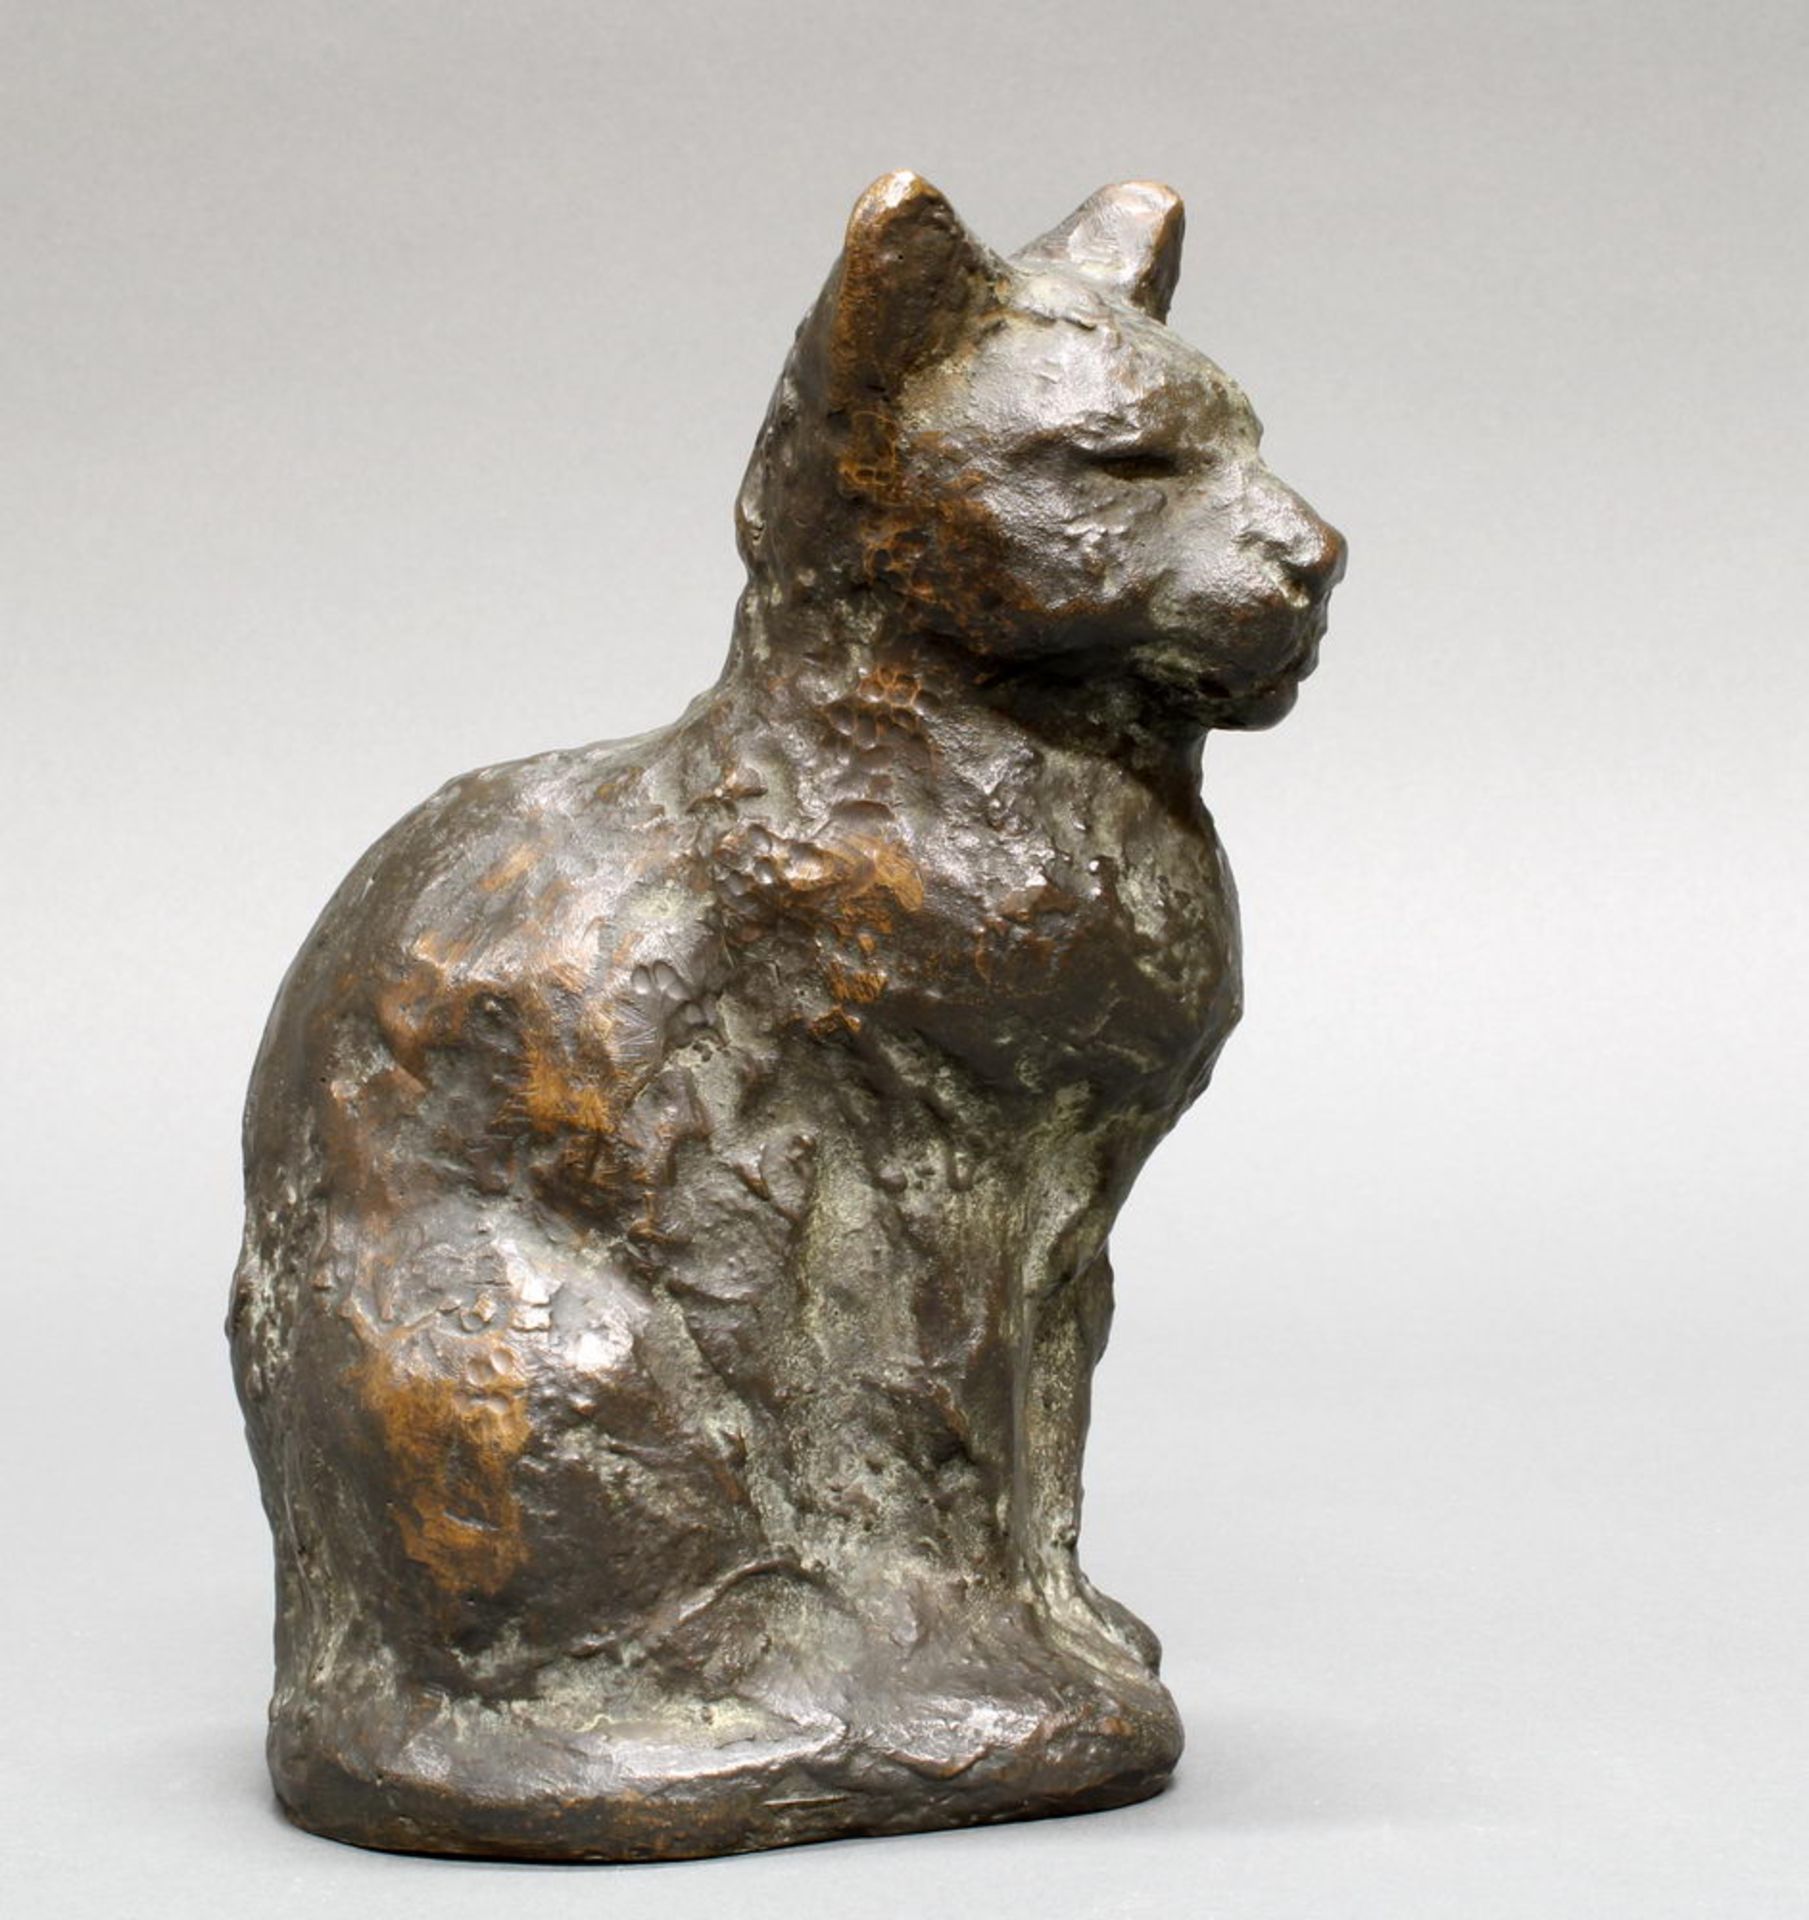 Bronze, schwarz patiniert, "Sitzende Katze", unten seitlich monogrammiert H.G., 19 cm hoch. Hans Ge